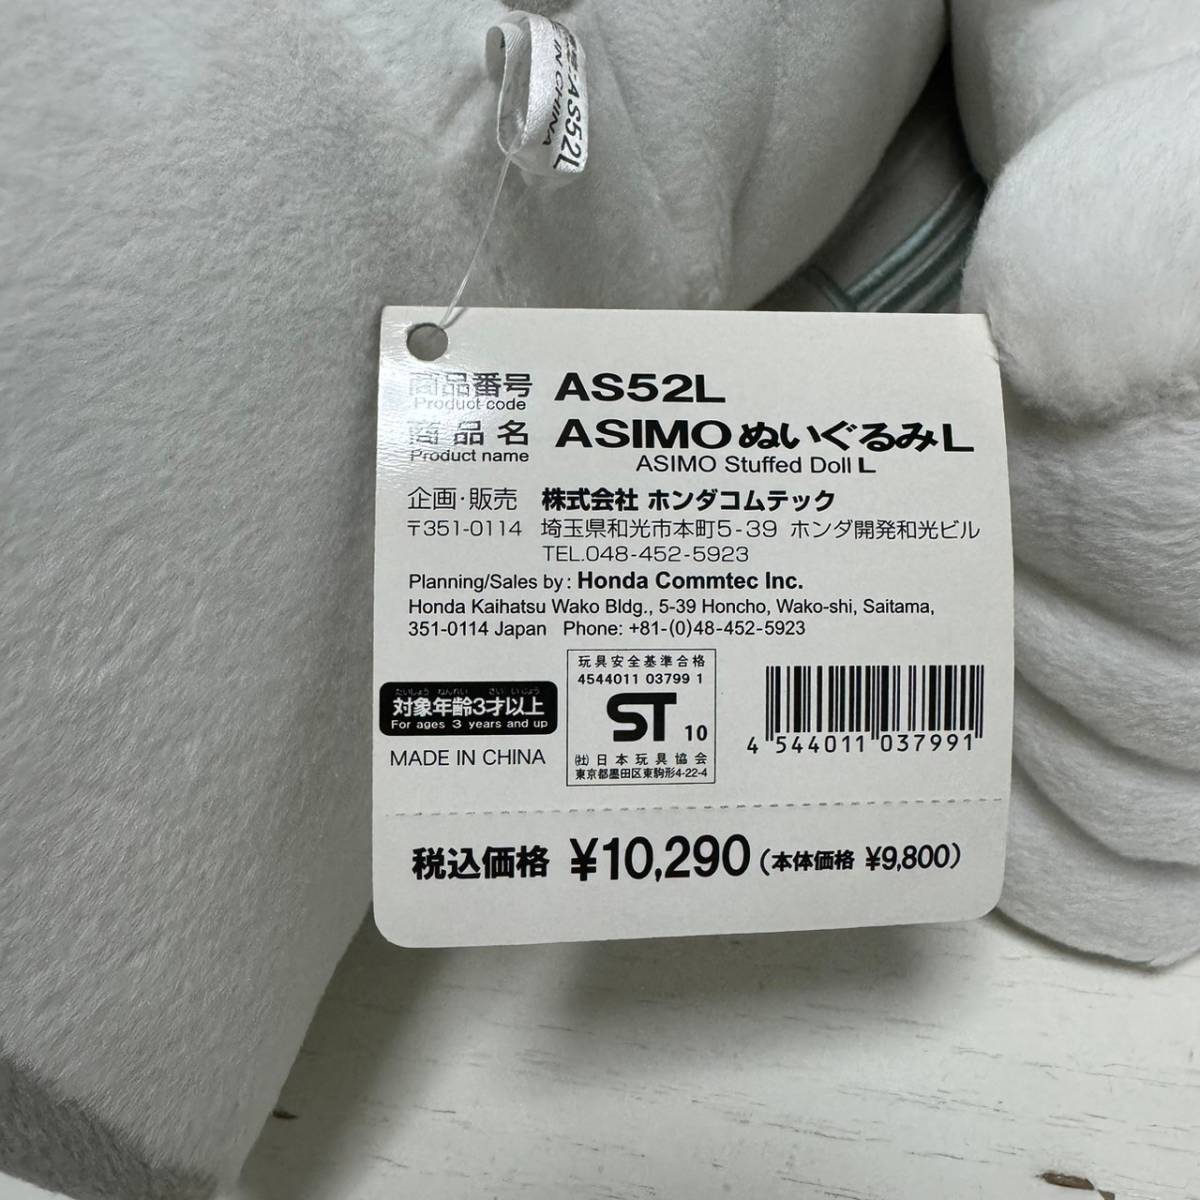 巨大ぬいぐるみ アシモ ASIMO ぬいぐるみ L タグ付き 大型 全長60cm HONDA AS52L ホンダ 車 人形 特大_画像8